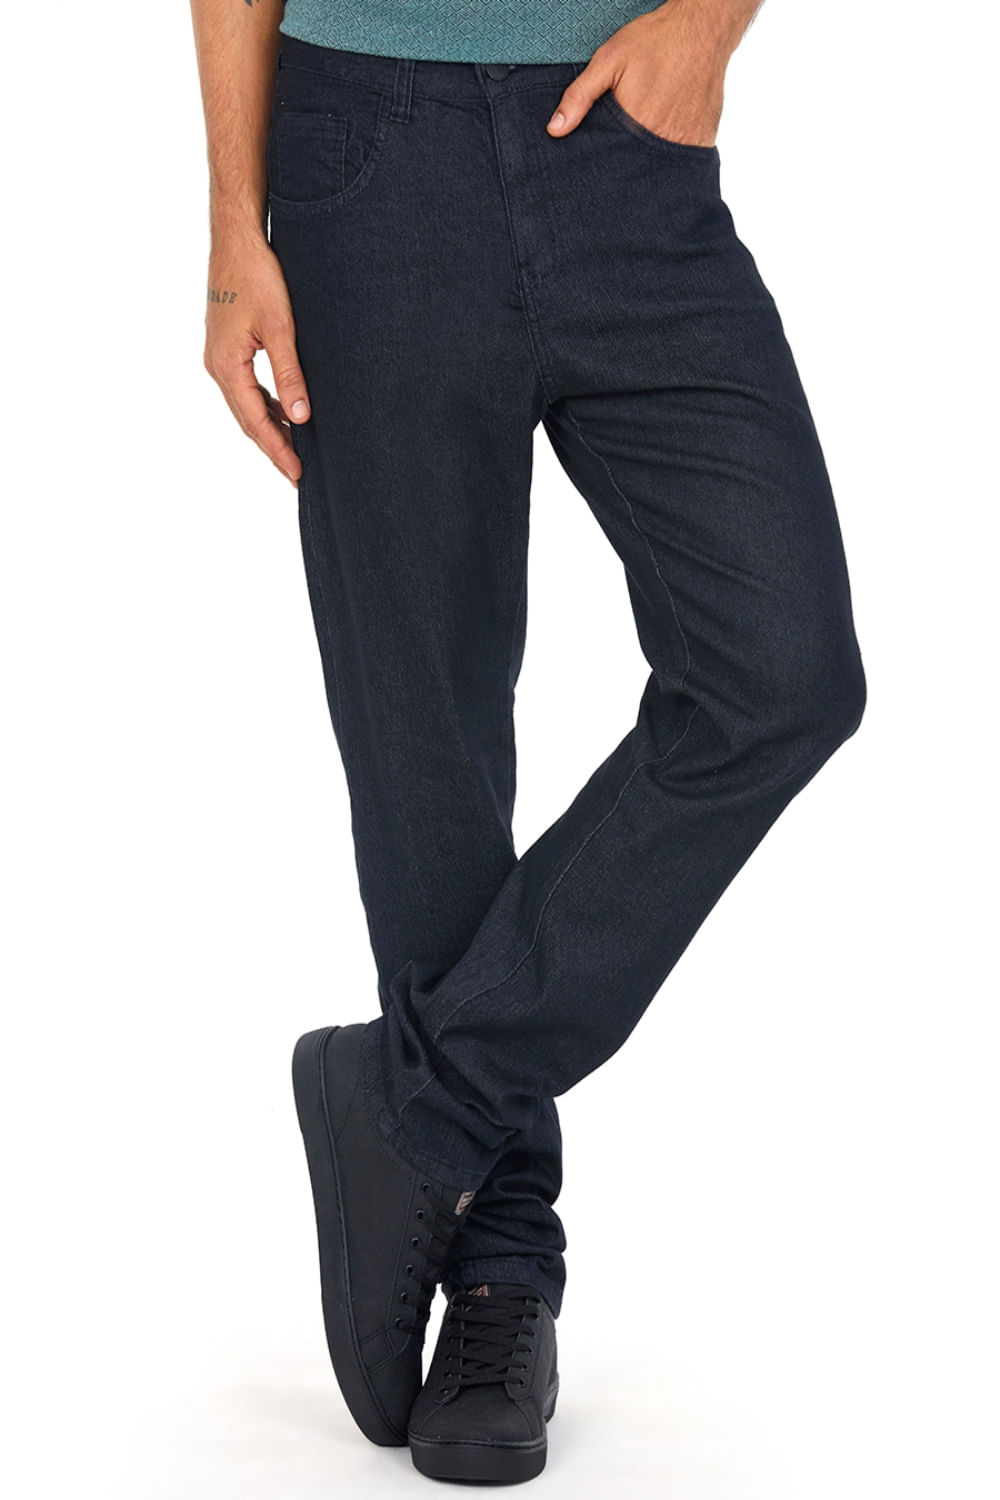 Calça Masculina Jeans Regular Polo Wear - Polo Wear